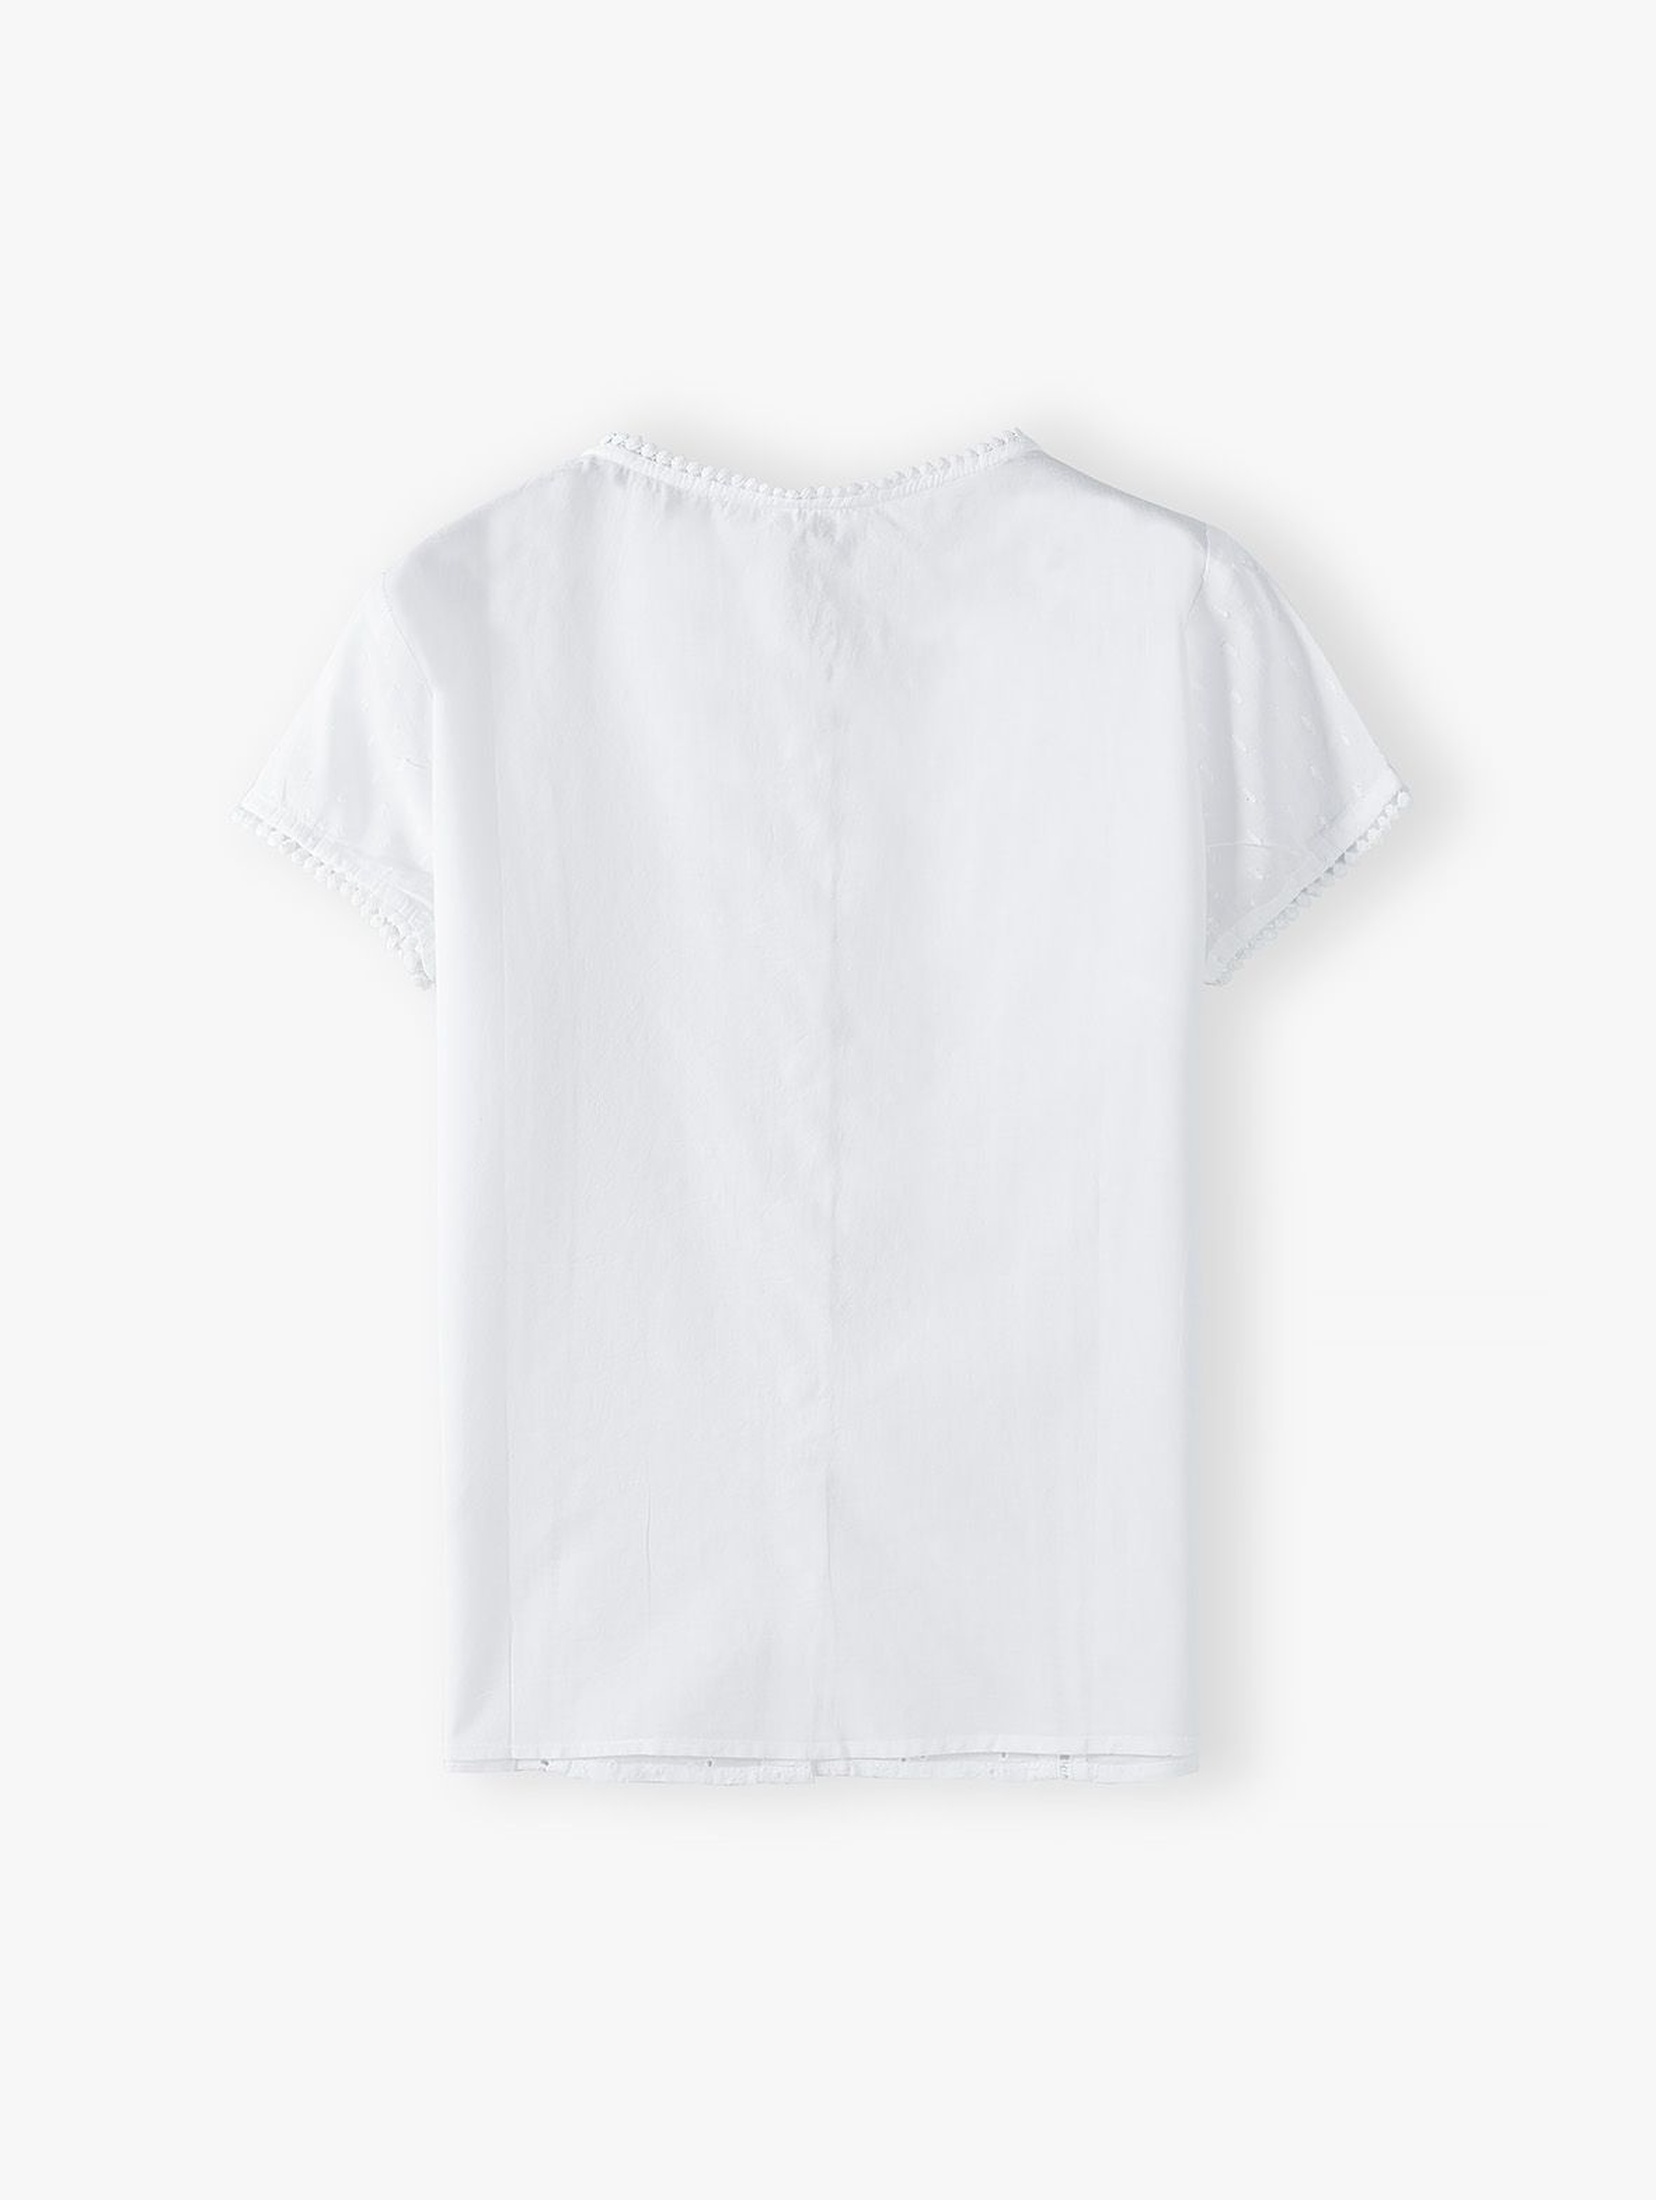 Biała bawełniana bluzka koszulowa damska